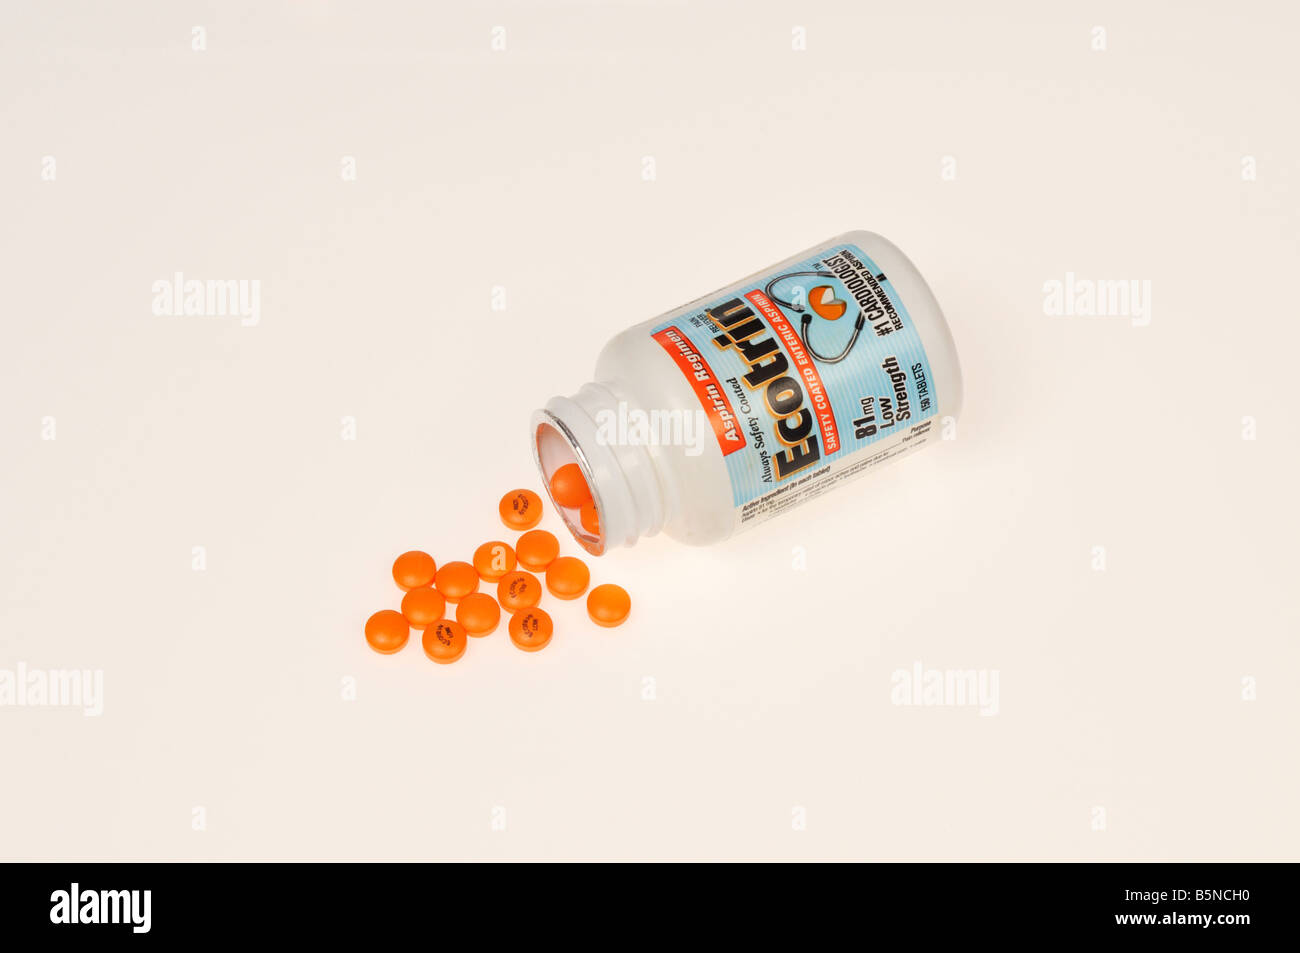 Ecotrin 81 mg Niedrigdosis Aspirin-Flasche mit orange Tabletten auf weißem Hintergrund Ausschnitt Stockfoto